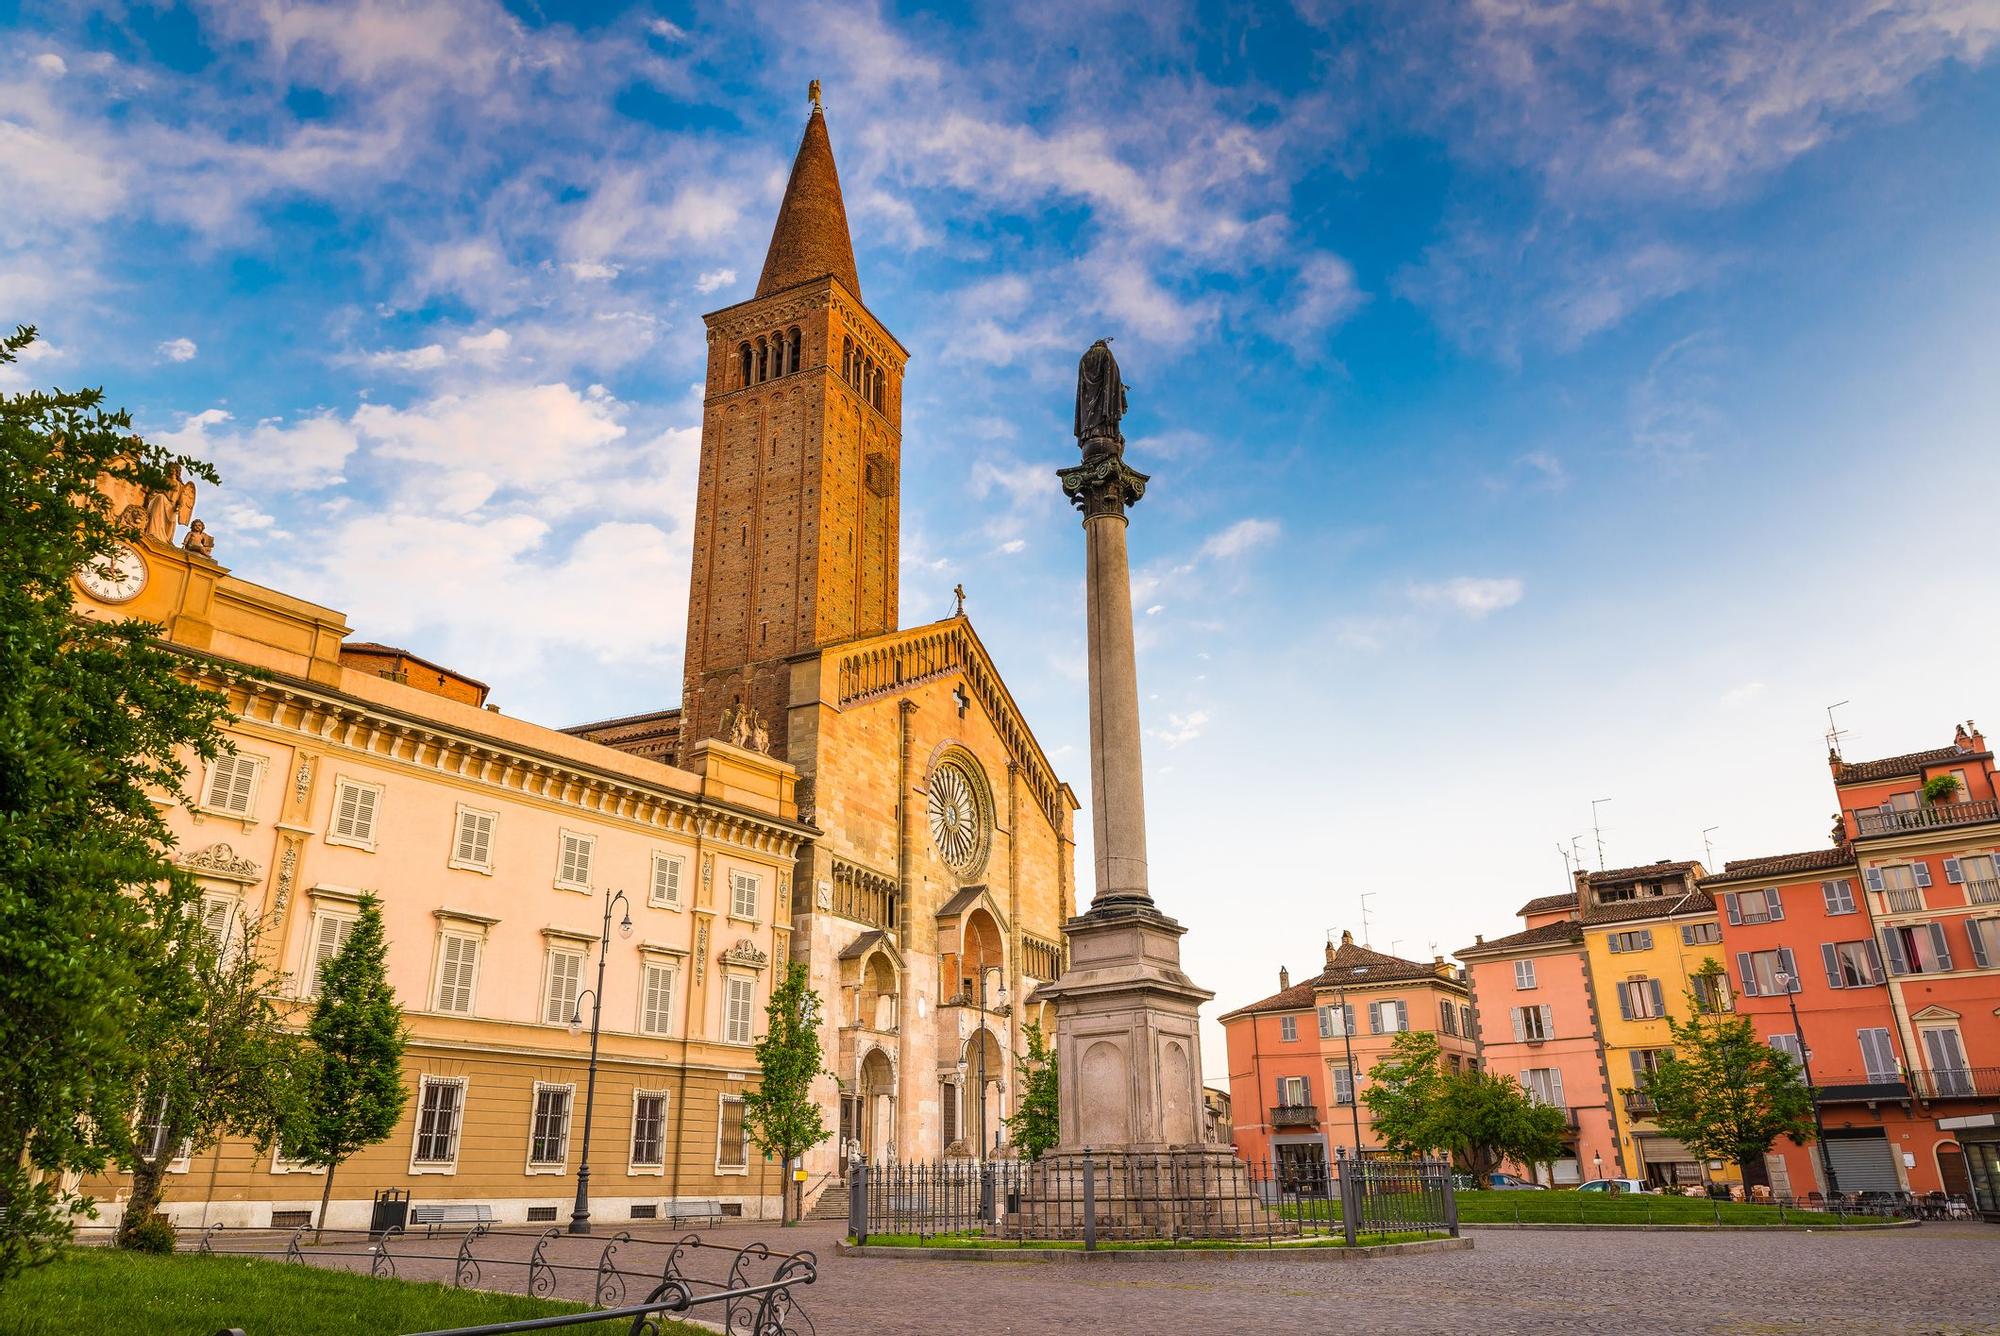 La Piazza Duomo de Piacenza conserva su herencia medieval